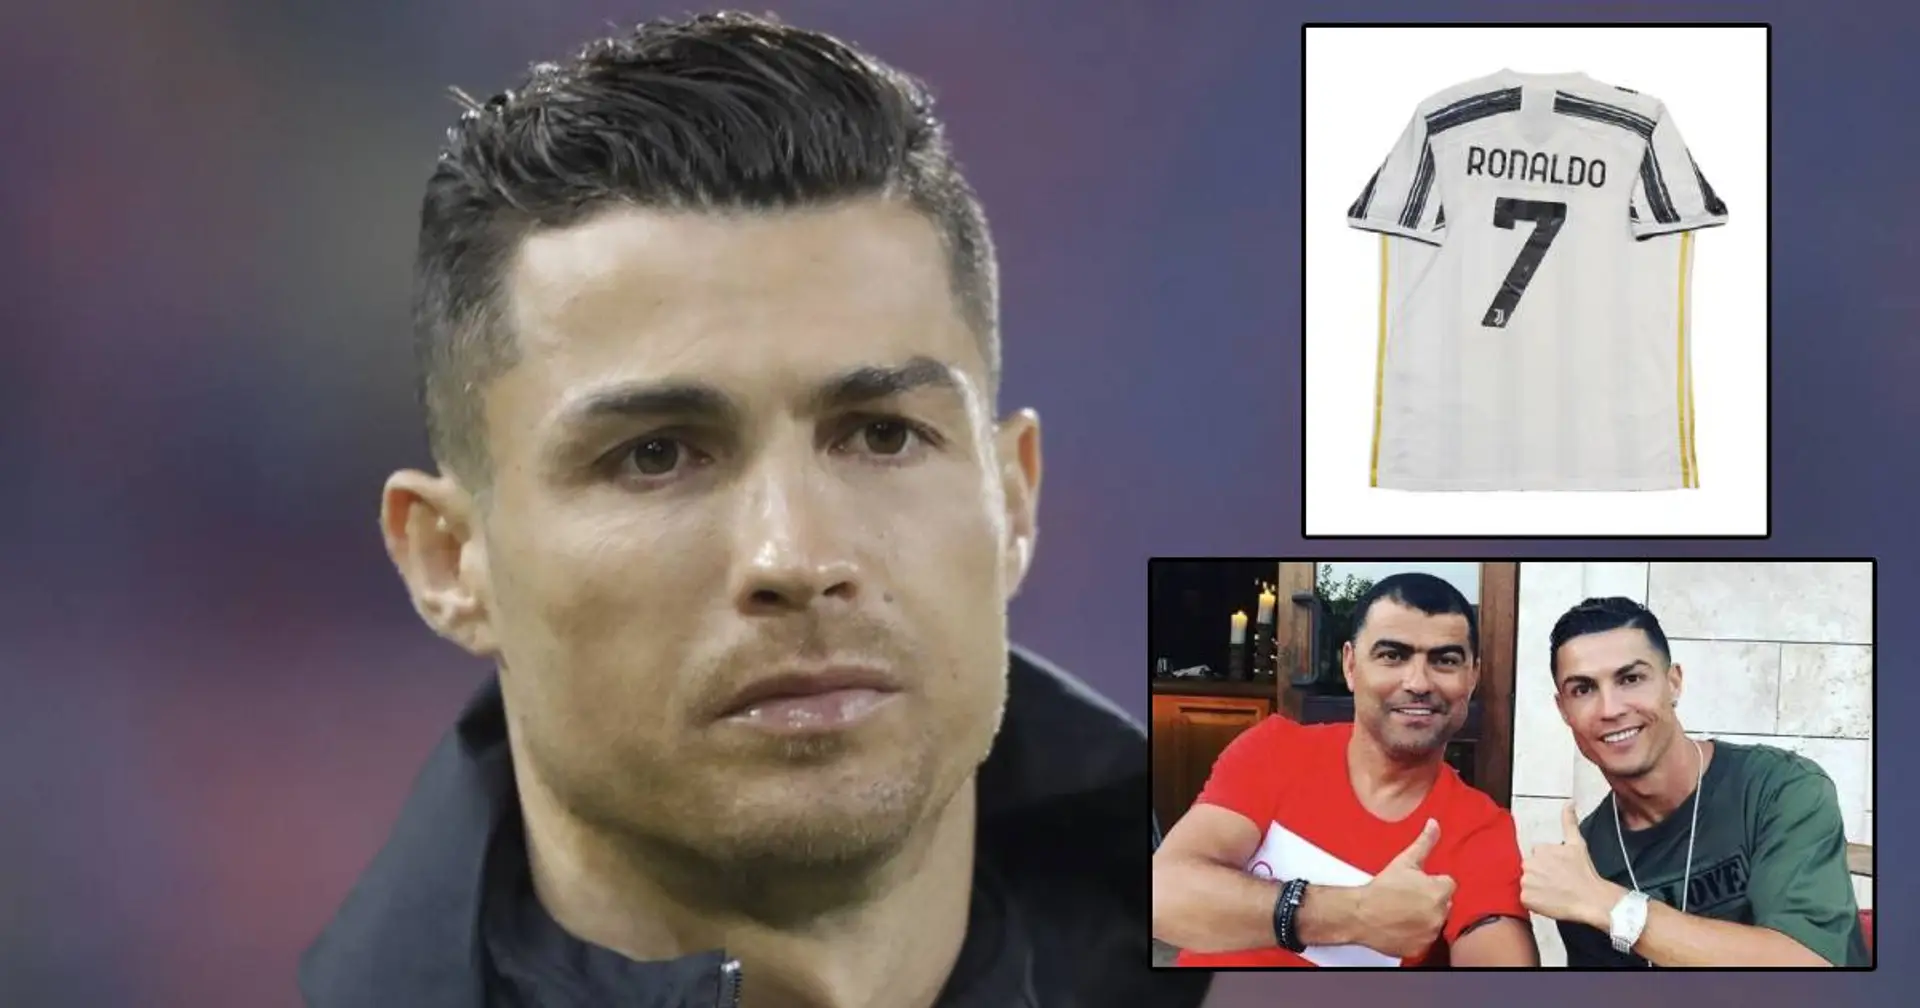 Maglie false della Juve, il fratello di Cristiano Ronaldo è nei guai: cosa è successo 